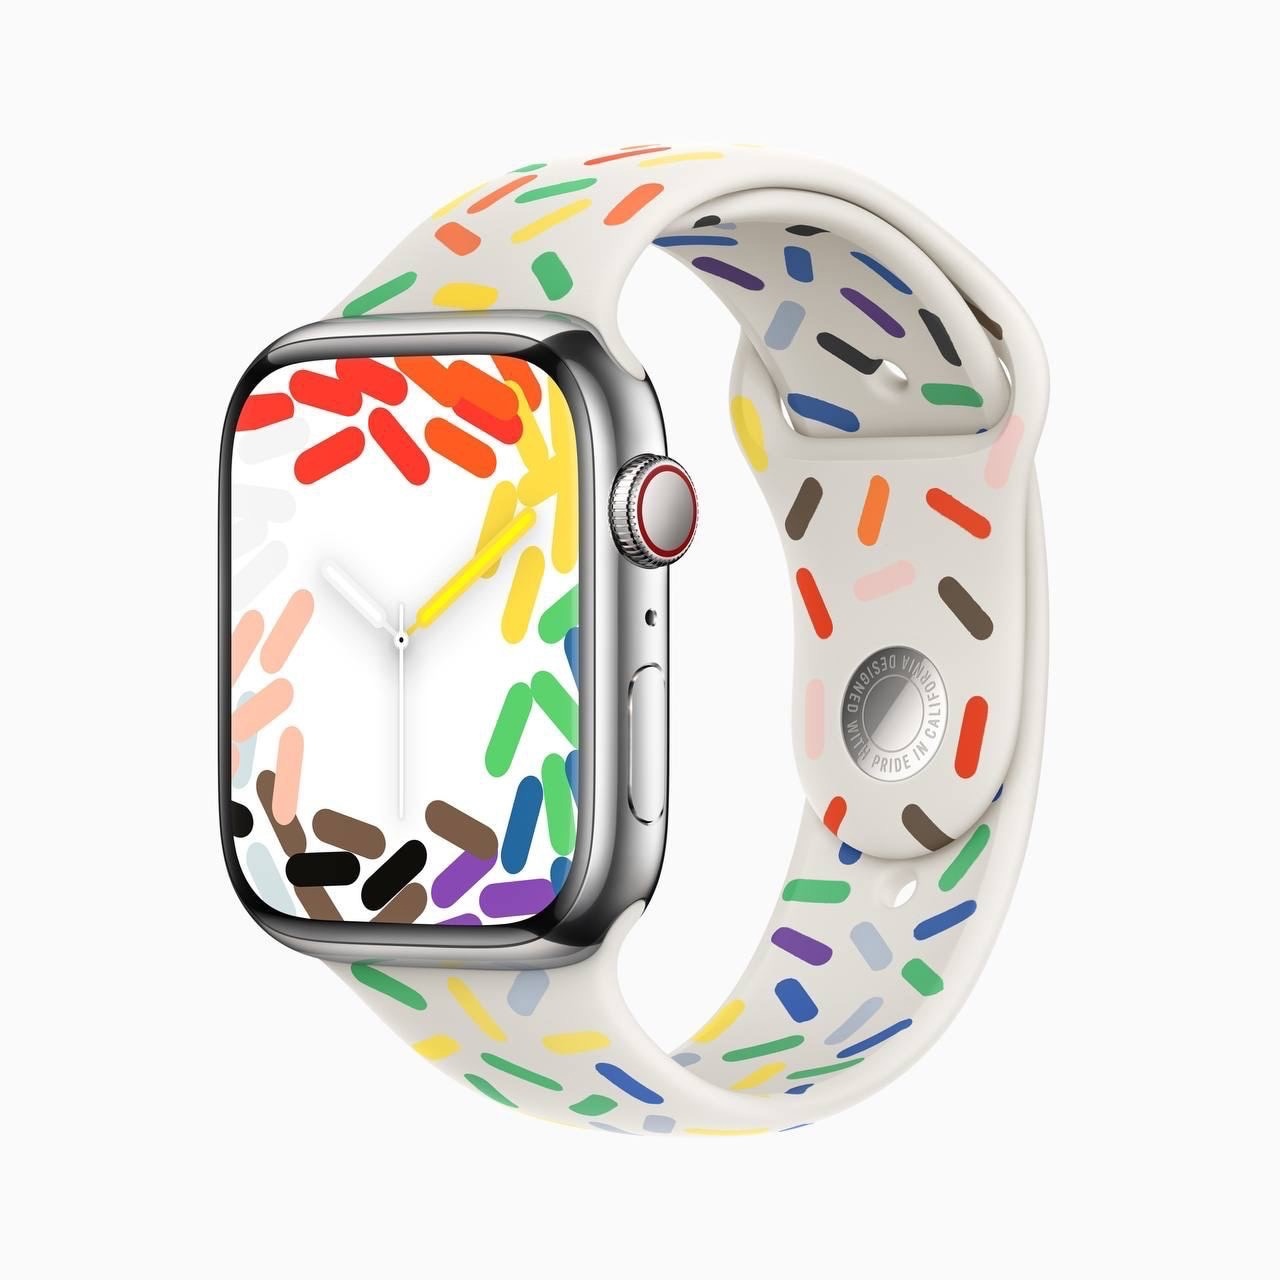 Apple представила новый ремешок для Apple Watch